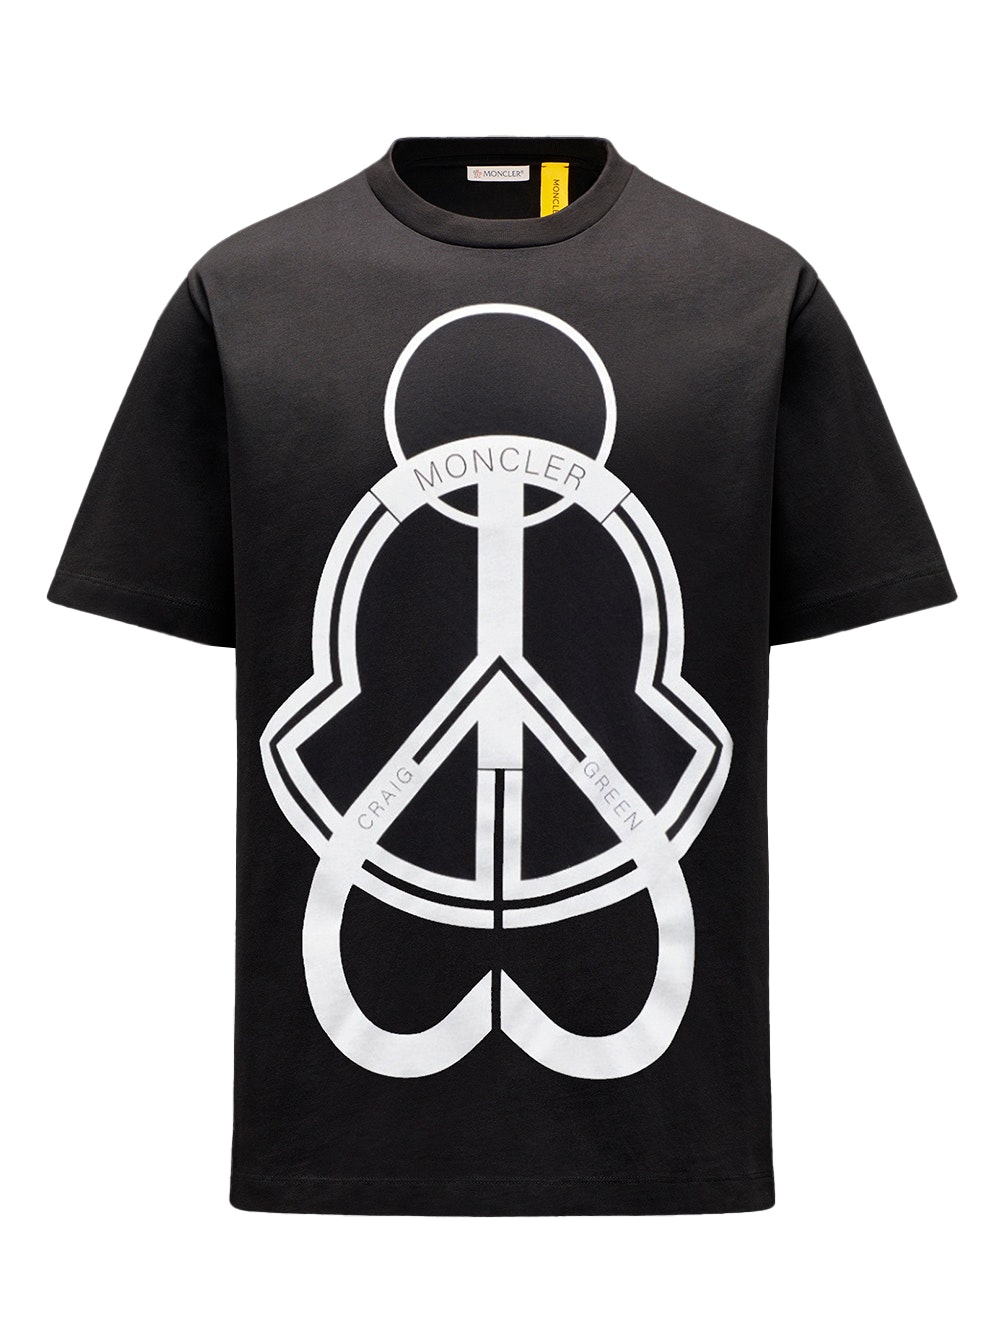 SASOM | เสื้อผ้า Moncler 5 Craig Green Logo Graphic Printed T-Shirt ...